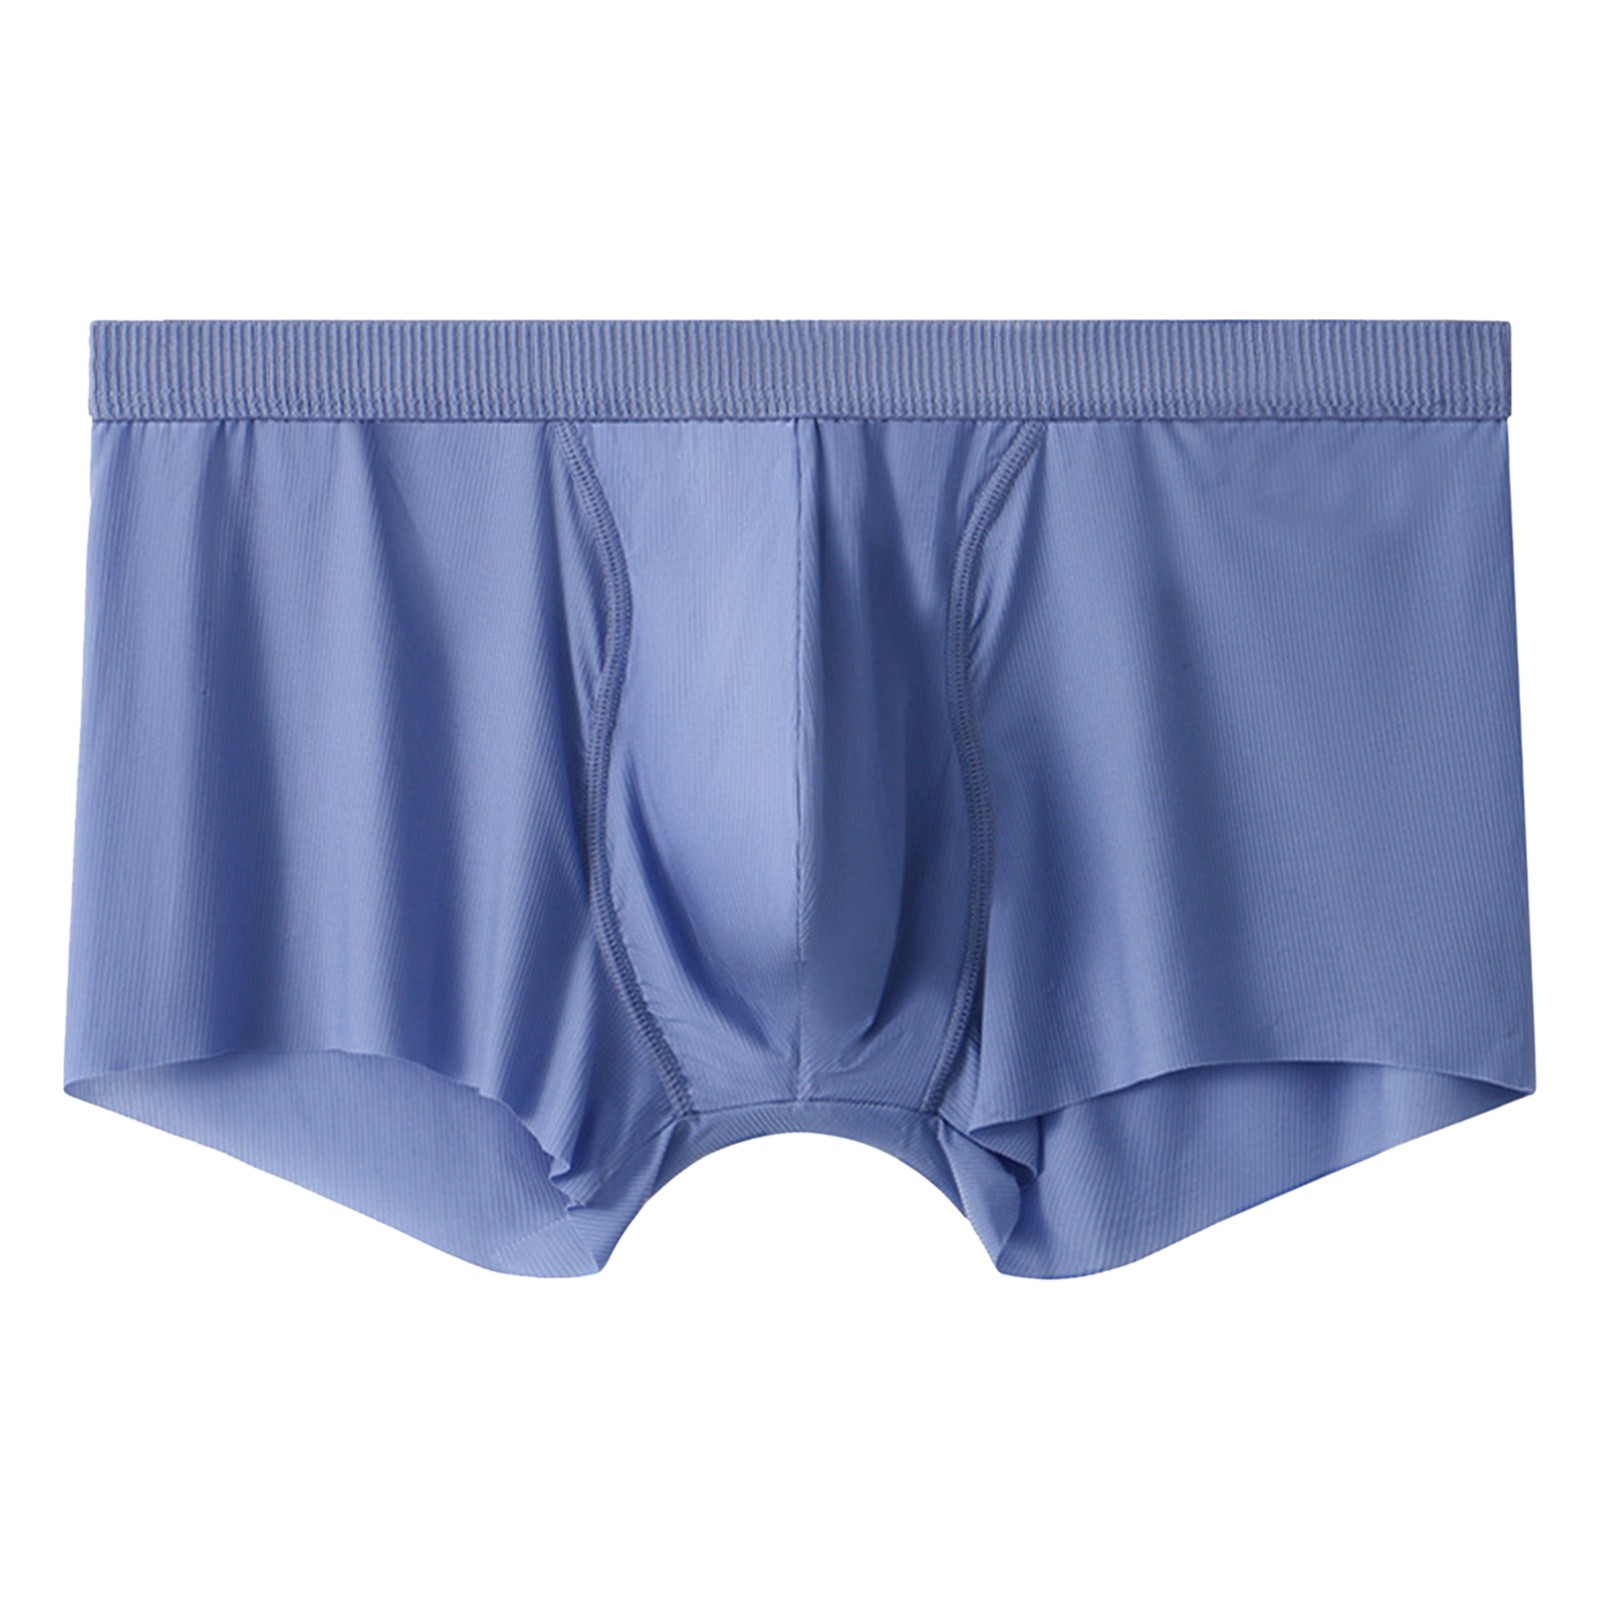 Zhouzou Men'S Underwear Ice Silk Flat Corner Underwear Thin Breathable ...